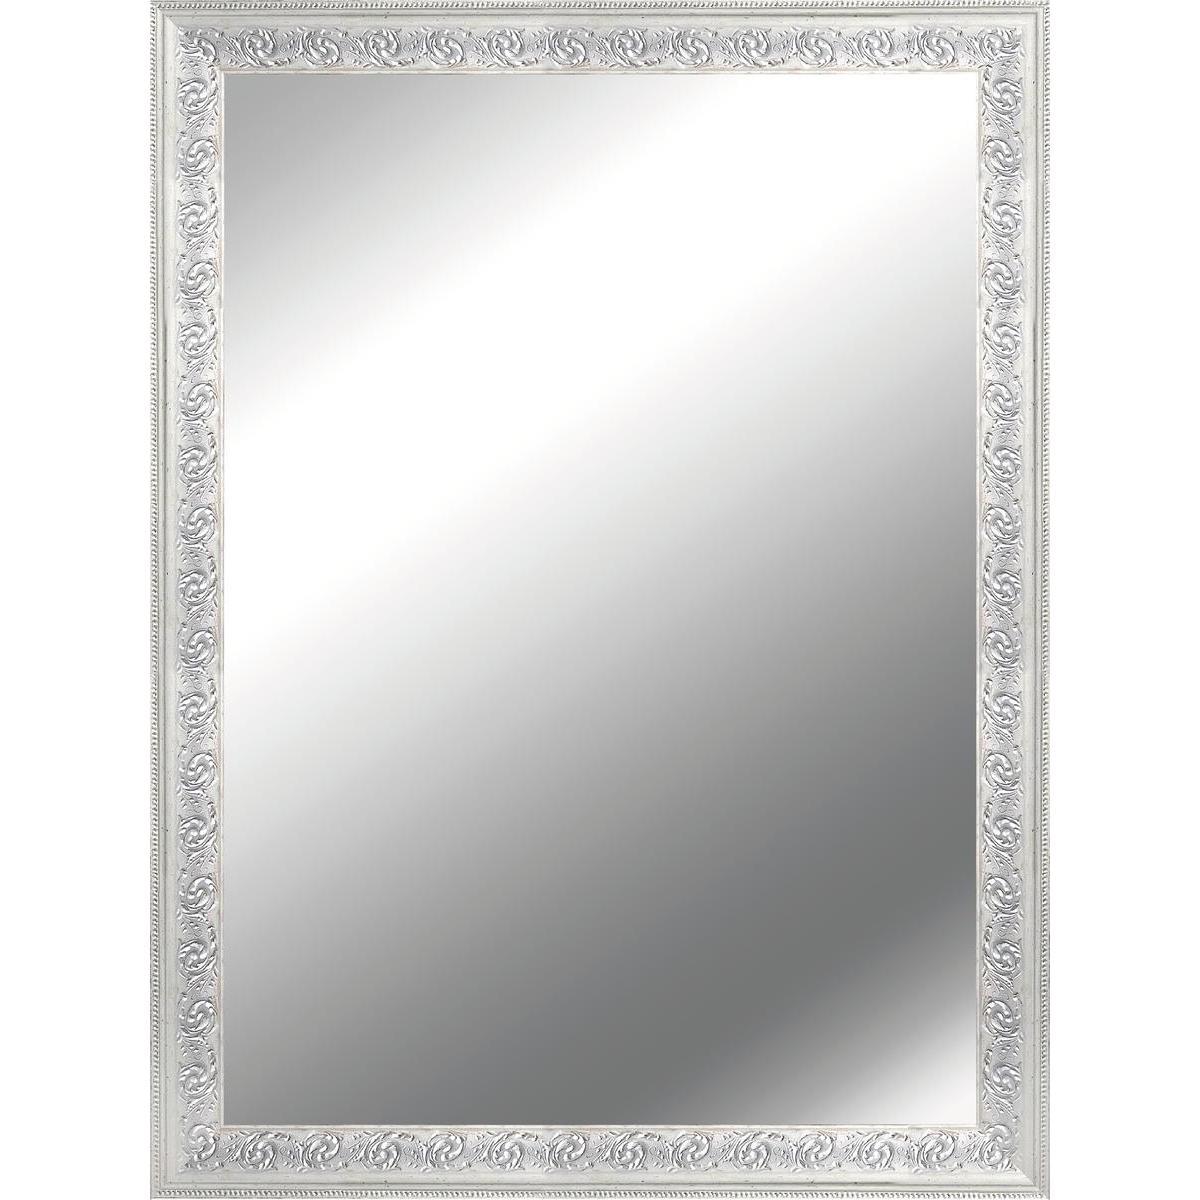 Miroir charme - H 71 x 61 cm - Transparent, argent